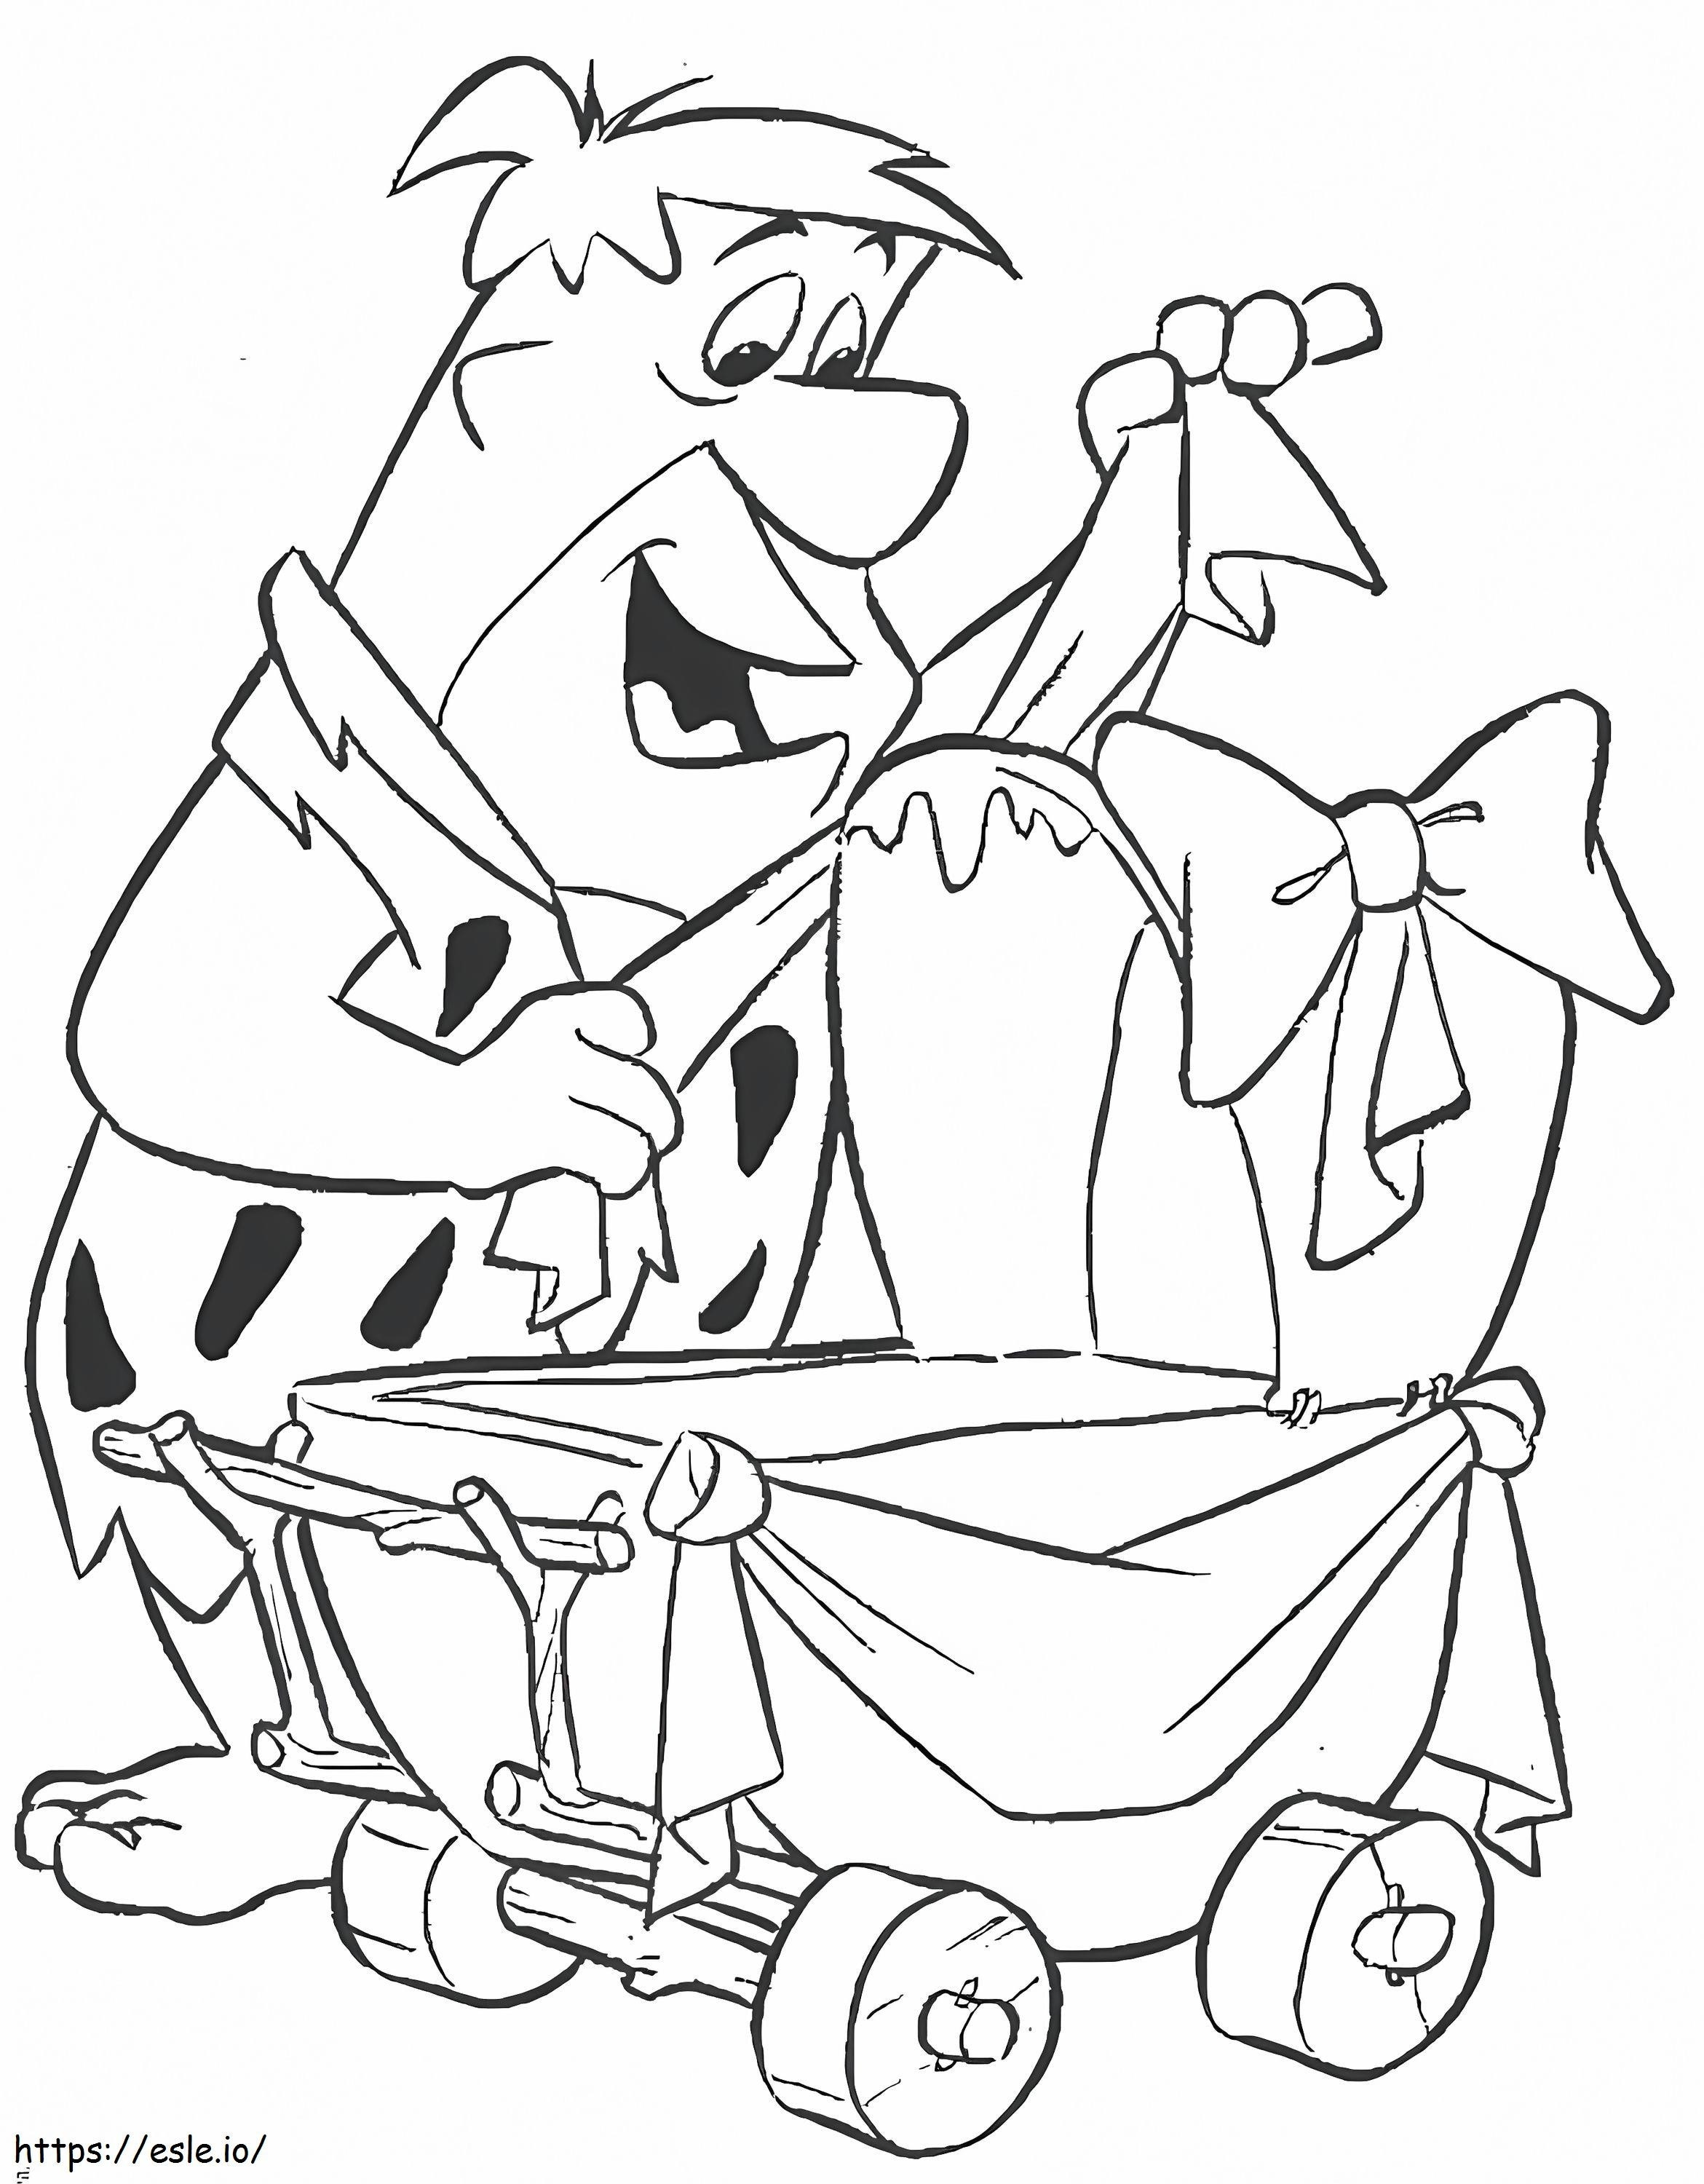 Fred Flintstone i dziecko kolorowanka